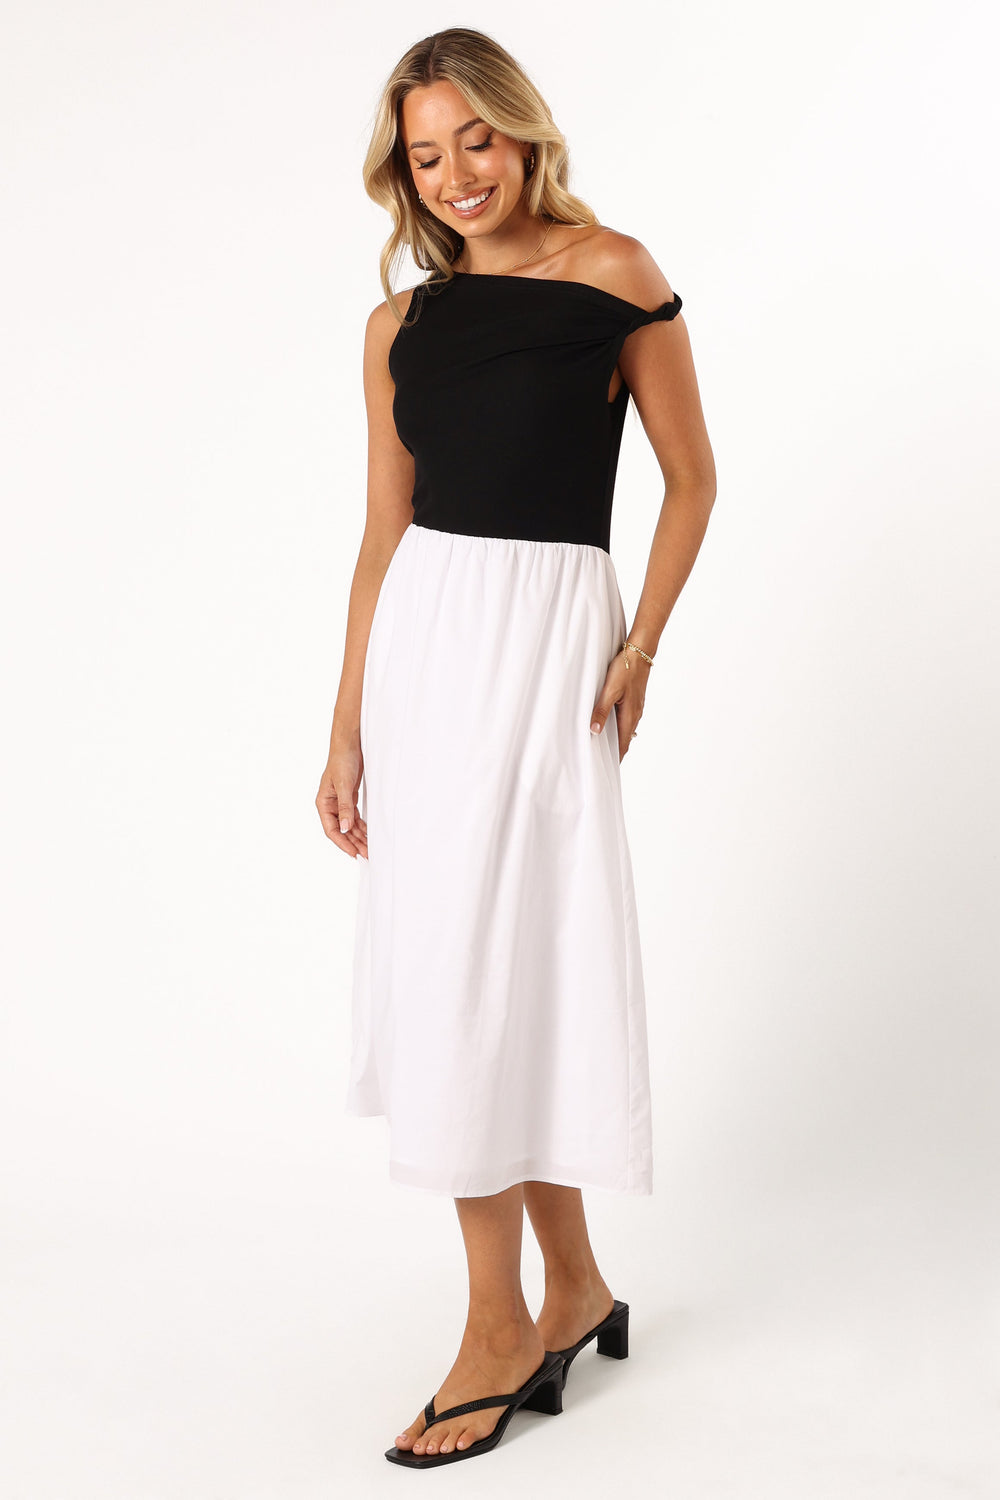 Petal and Pup USA DRESSES Judson Midi Dress - White/Black